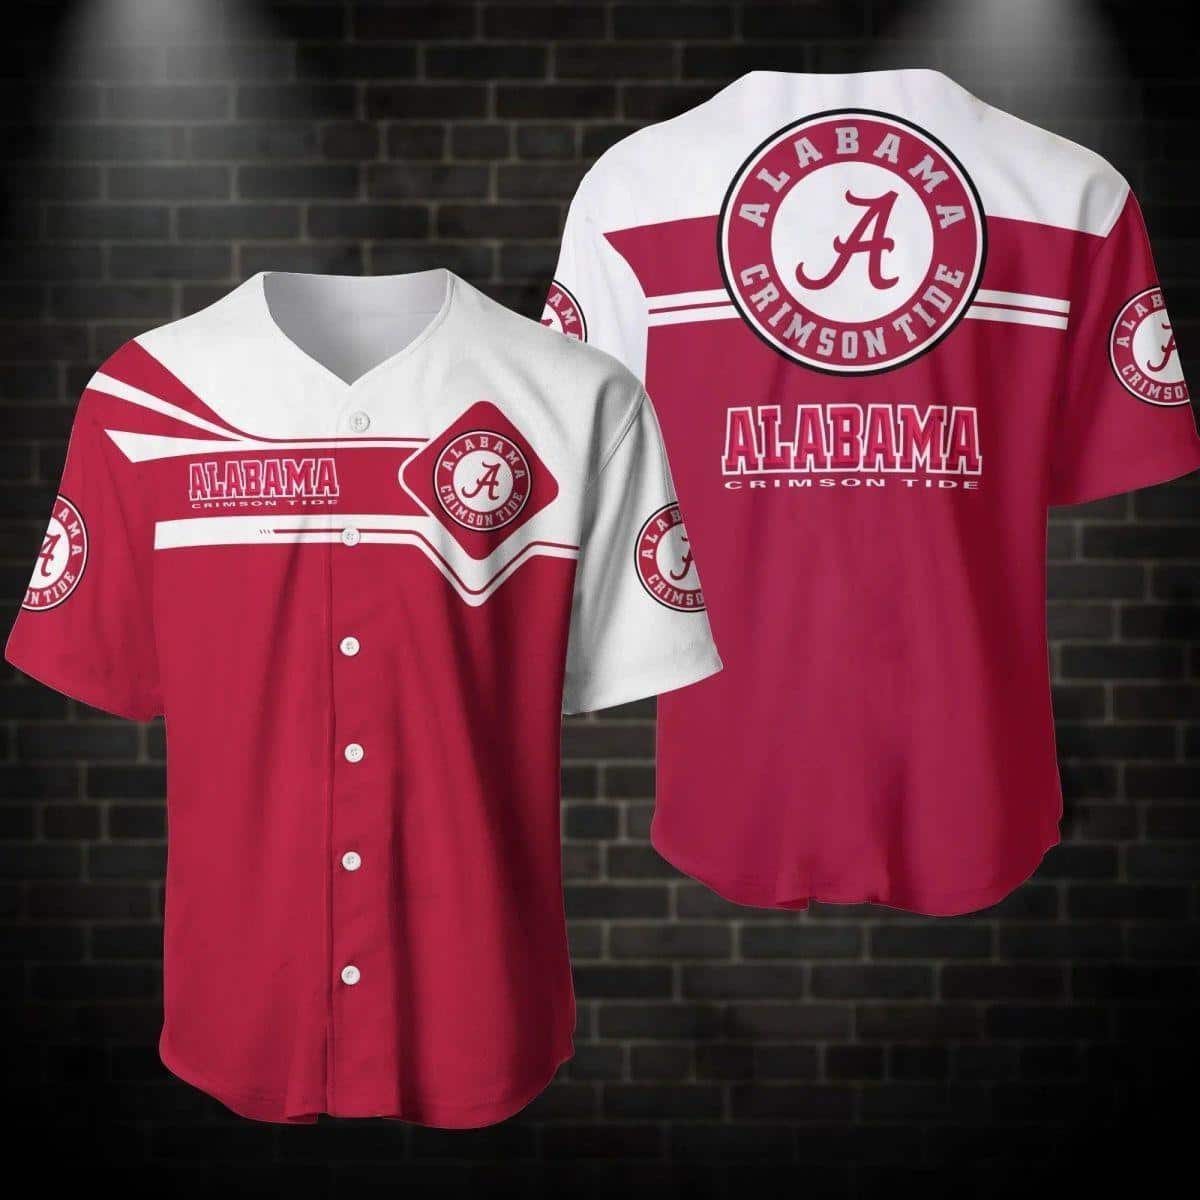 Trending NCAA Alabama Crimson Tide Baseball Jersey Gift For Sport Lovers